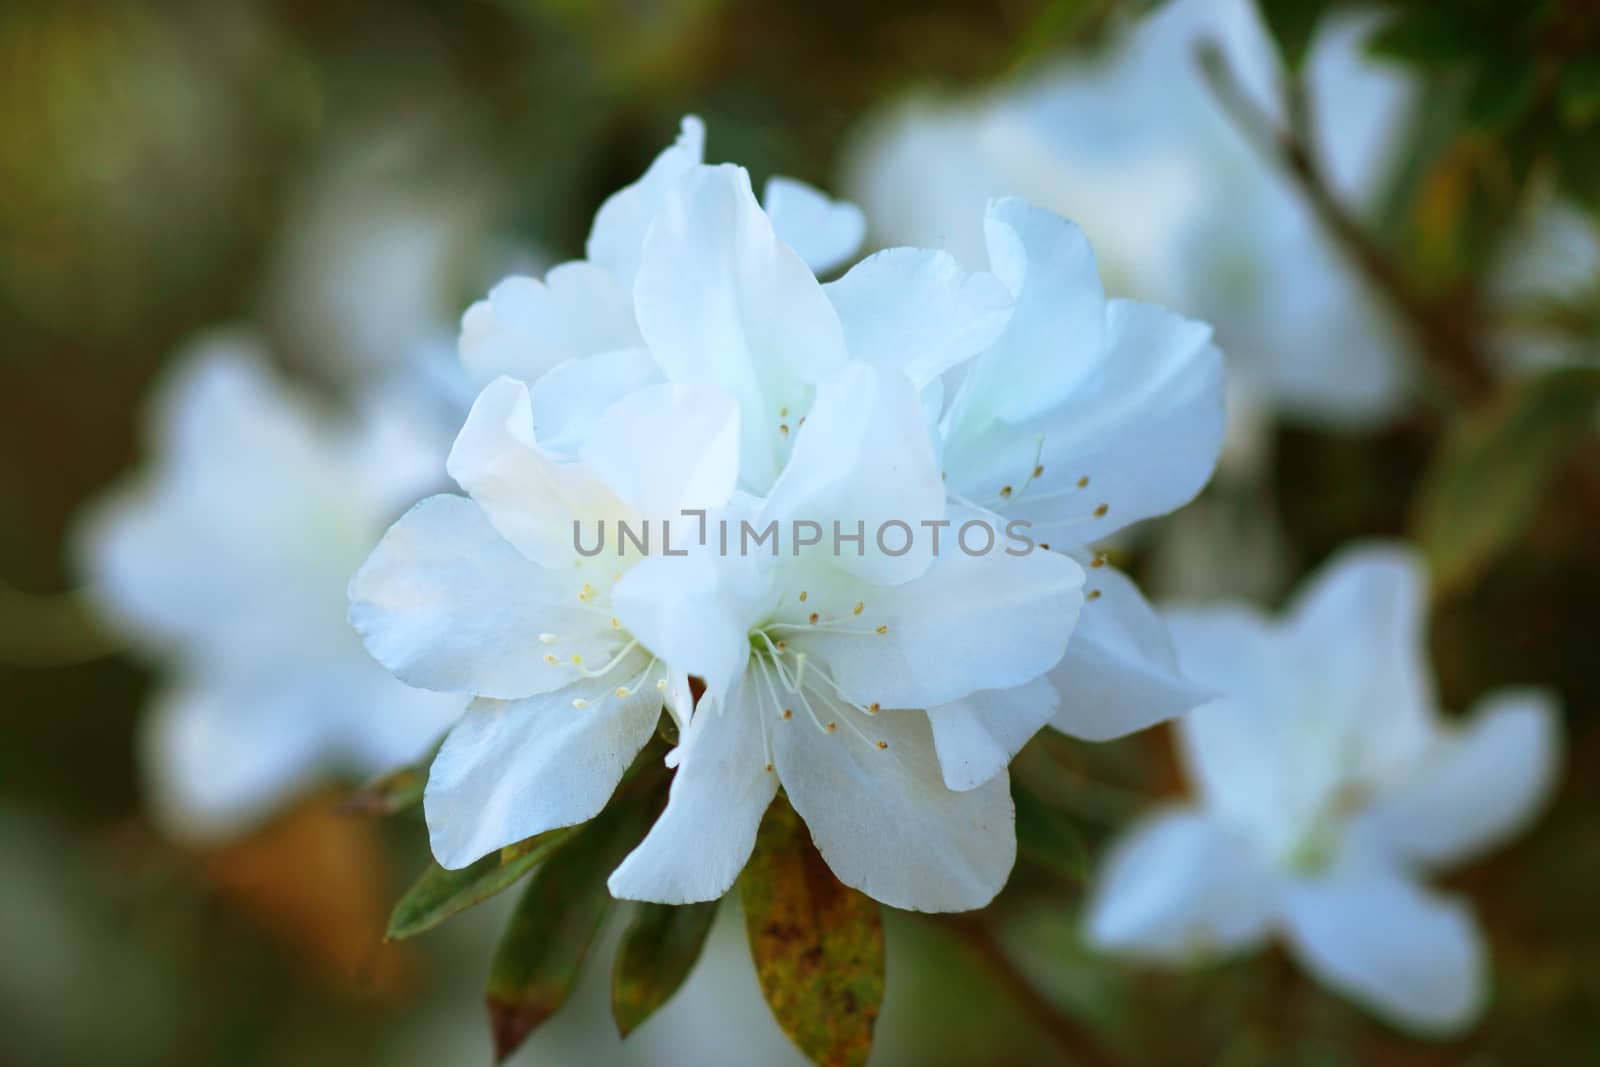 White azalea flowers in spring.